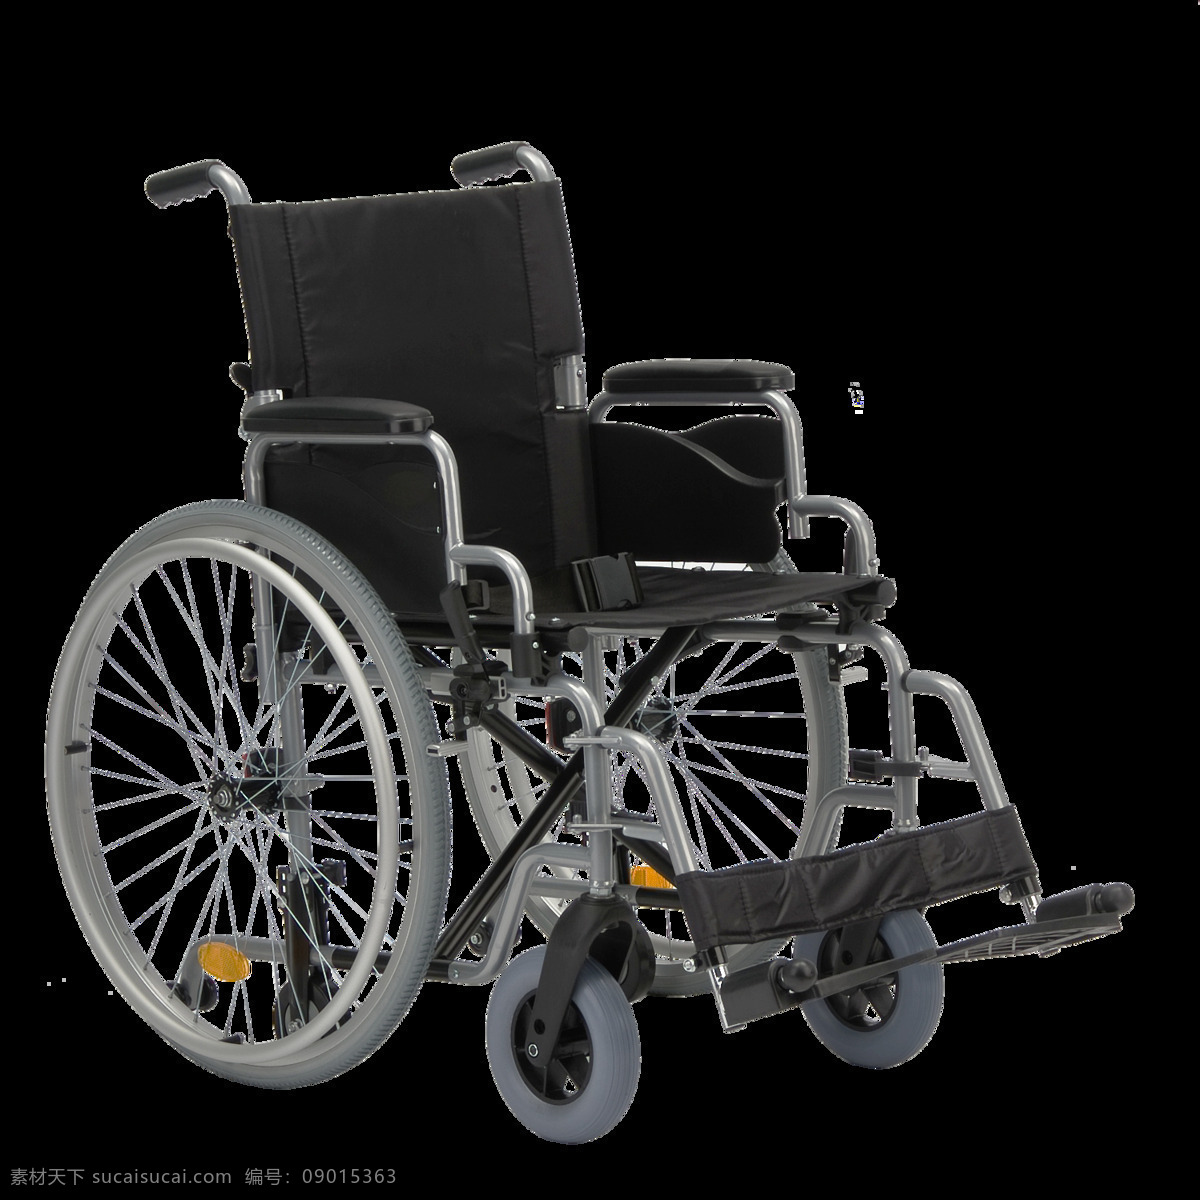 残疾 轮椅 免 抠 透明 图 层 木轮椅 越野轮椅 小轮轮椅 手摇轮椅 轮椅轮子 车载轮椅 老年轮椅 竞速轮椅 轮椅设计 残疾轮椅 折叠轮椅 智能轮椅 医院轮椅 轮椅图片